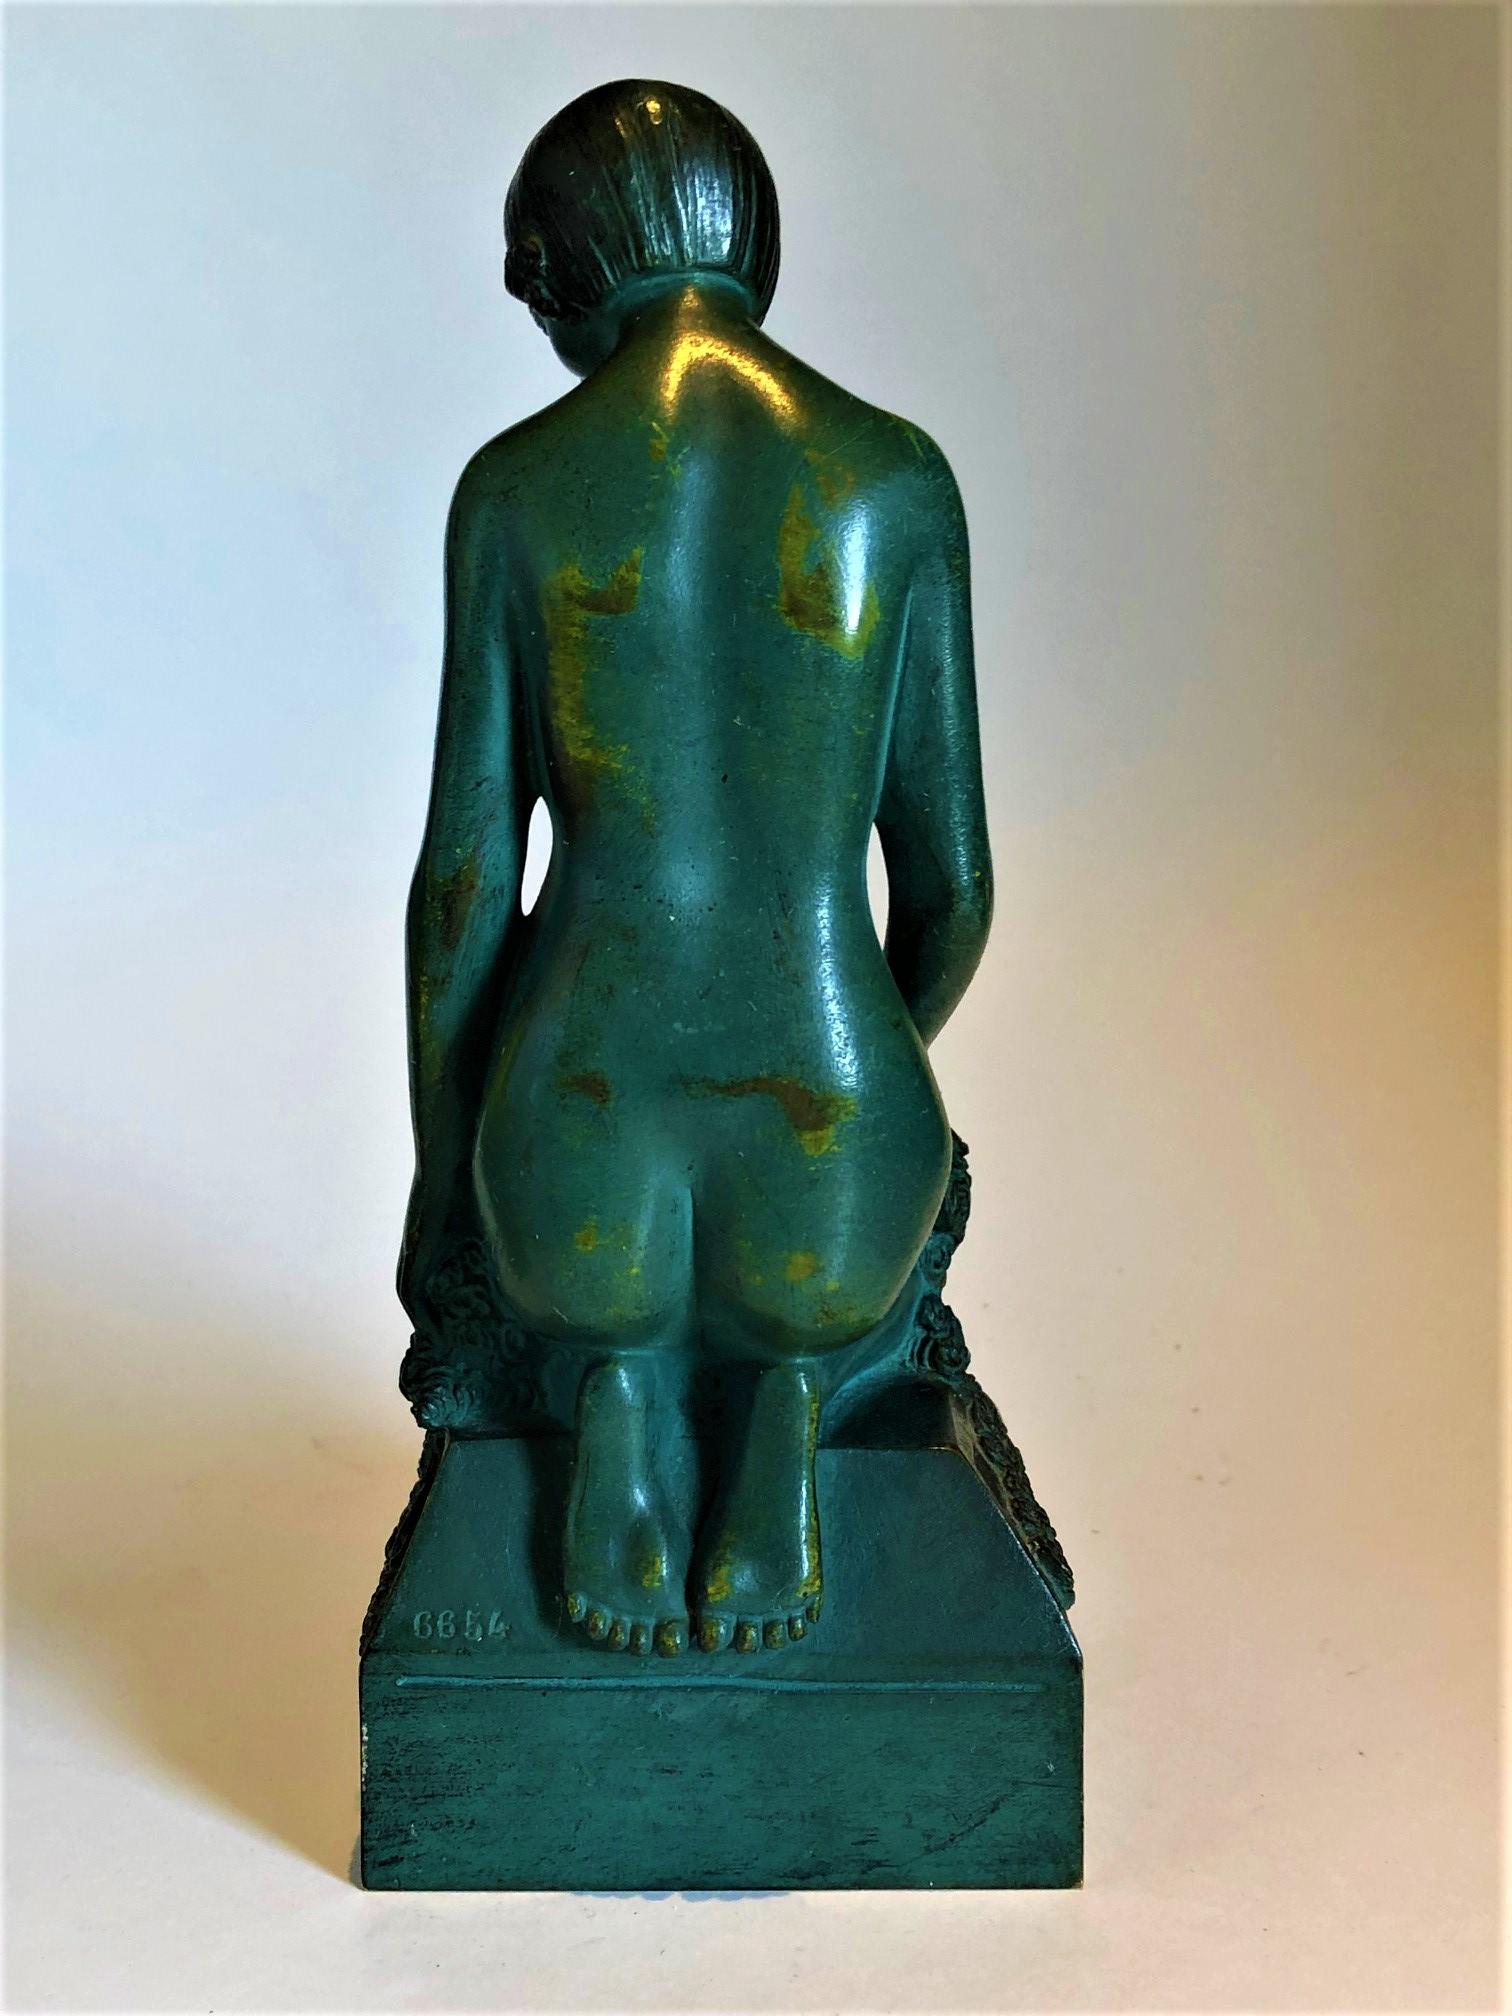 Français Serre-livres en bronze Art déco Femme nue érotique, c. France 1925, signé Scribe